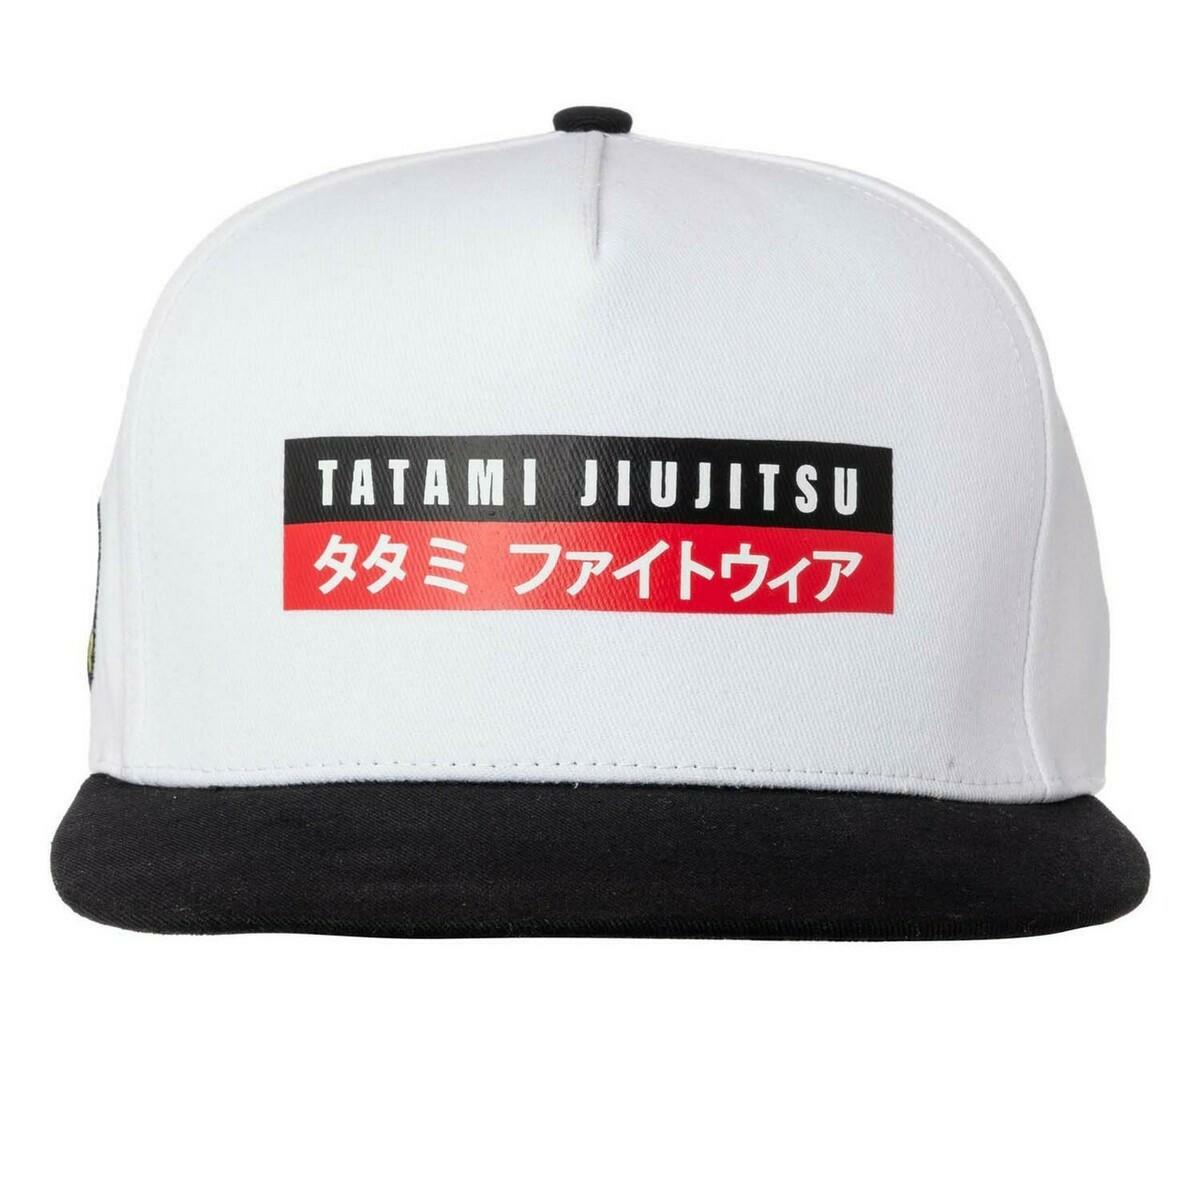 Tatami Fightwear Urban Snapback Cap Black PTATSBH004BK